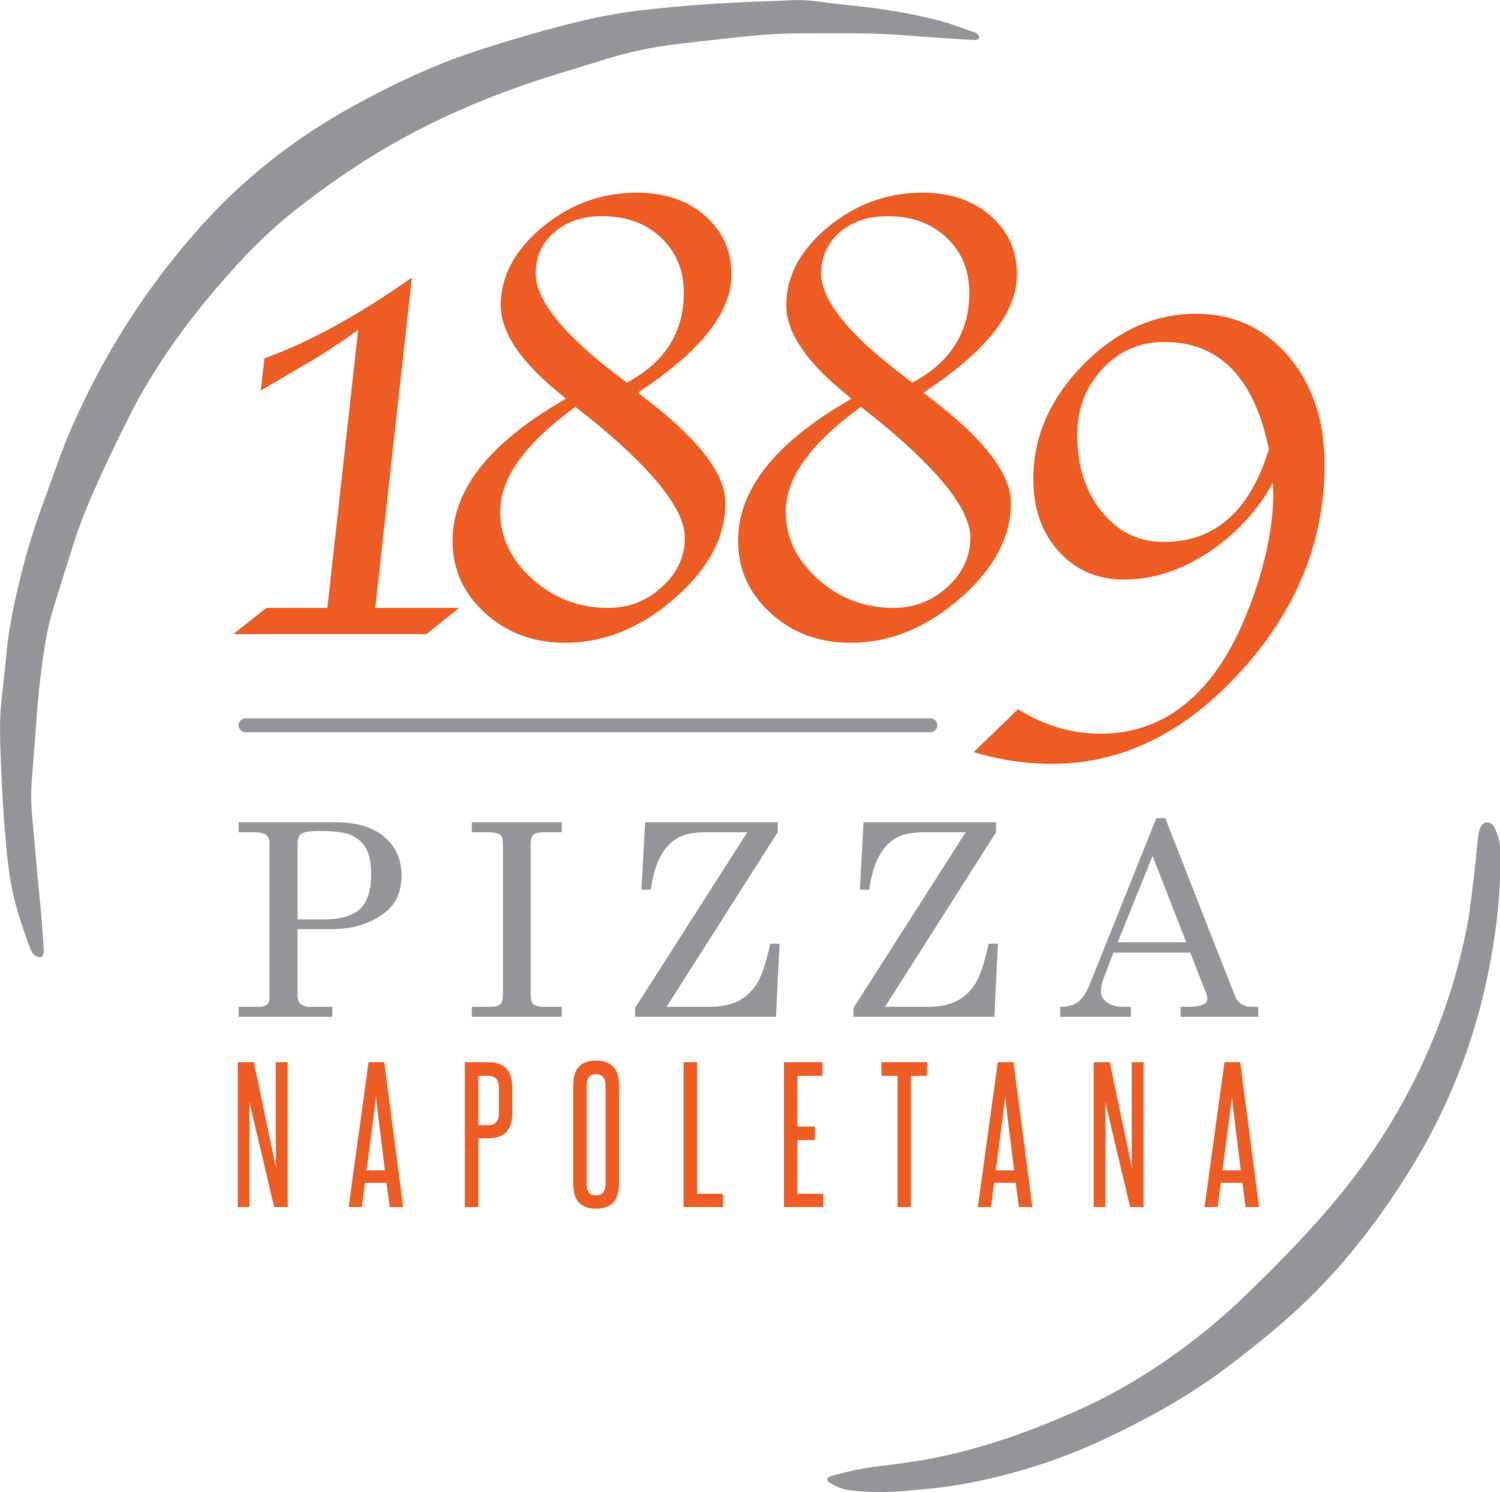 1889 Pizza Napoletana